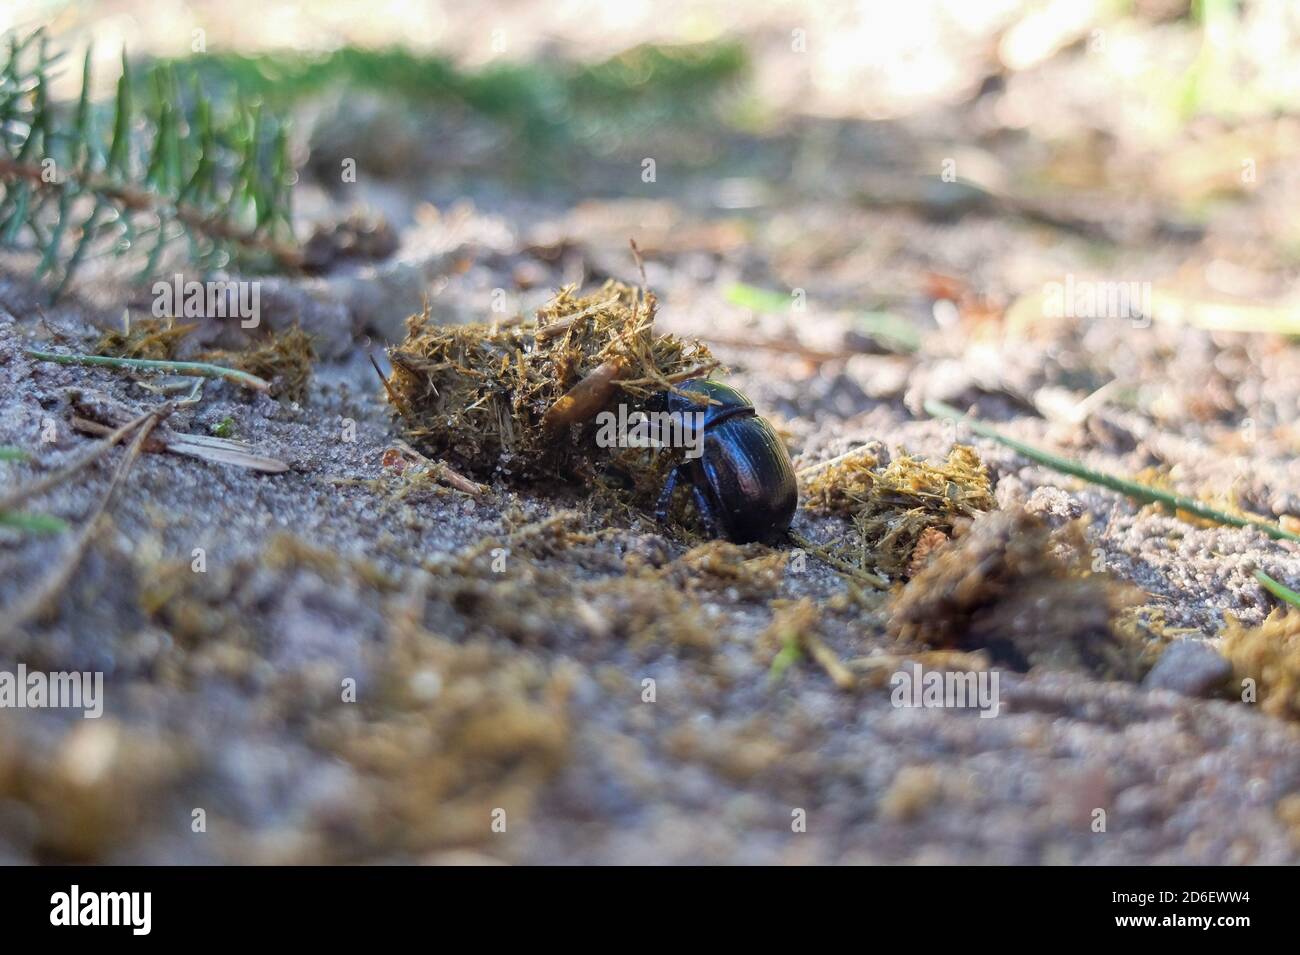 El escarabajo del estiércol (Geotrabes stercorarius) enrolla la bola de estiércol fresco Foto de stock